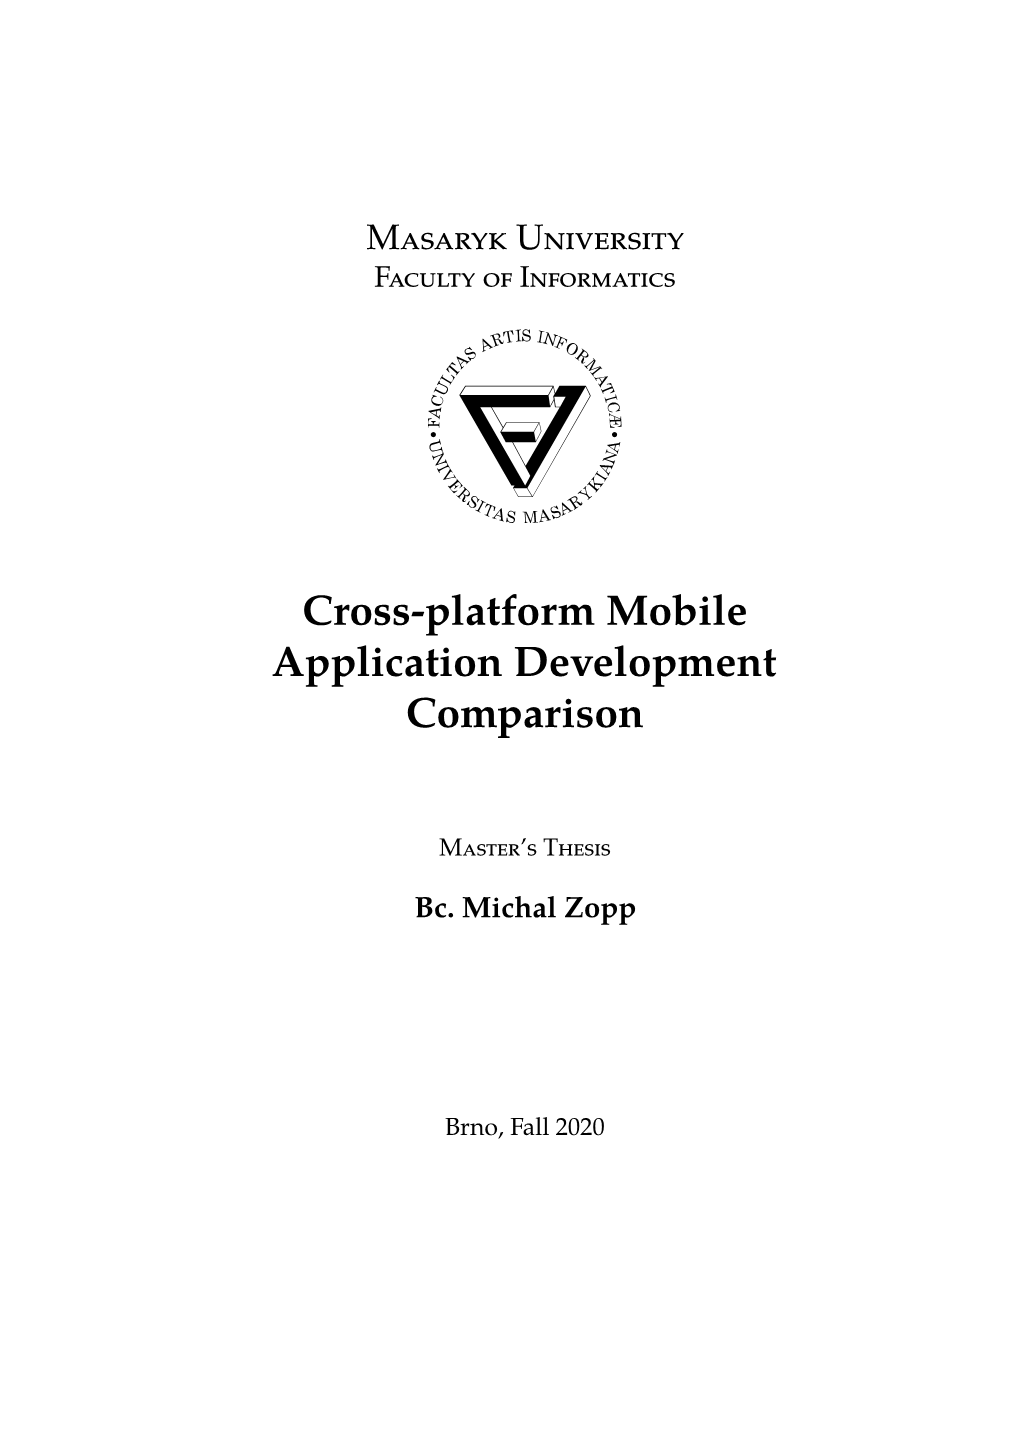 Cross-Platform Mobile Application Development Comparison